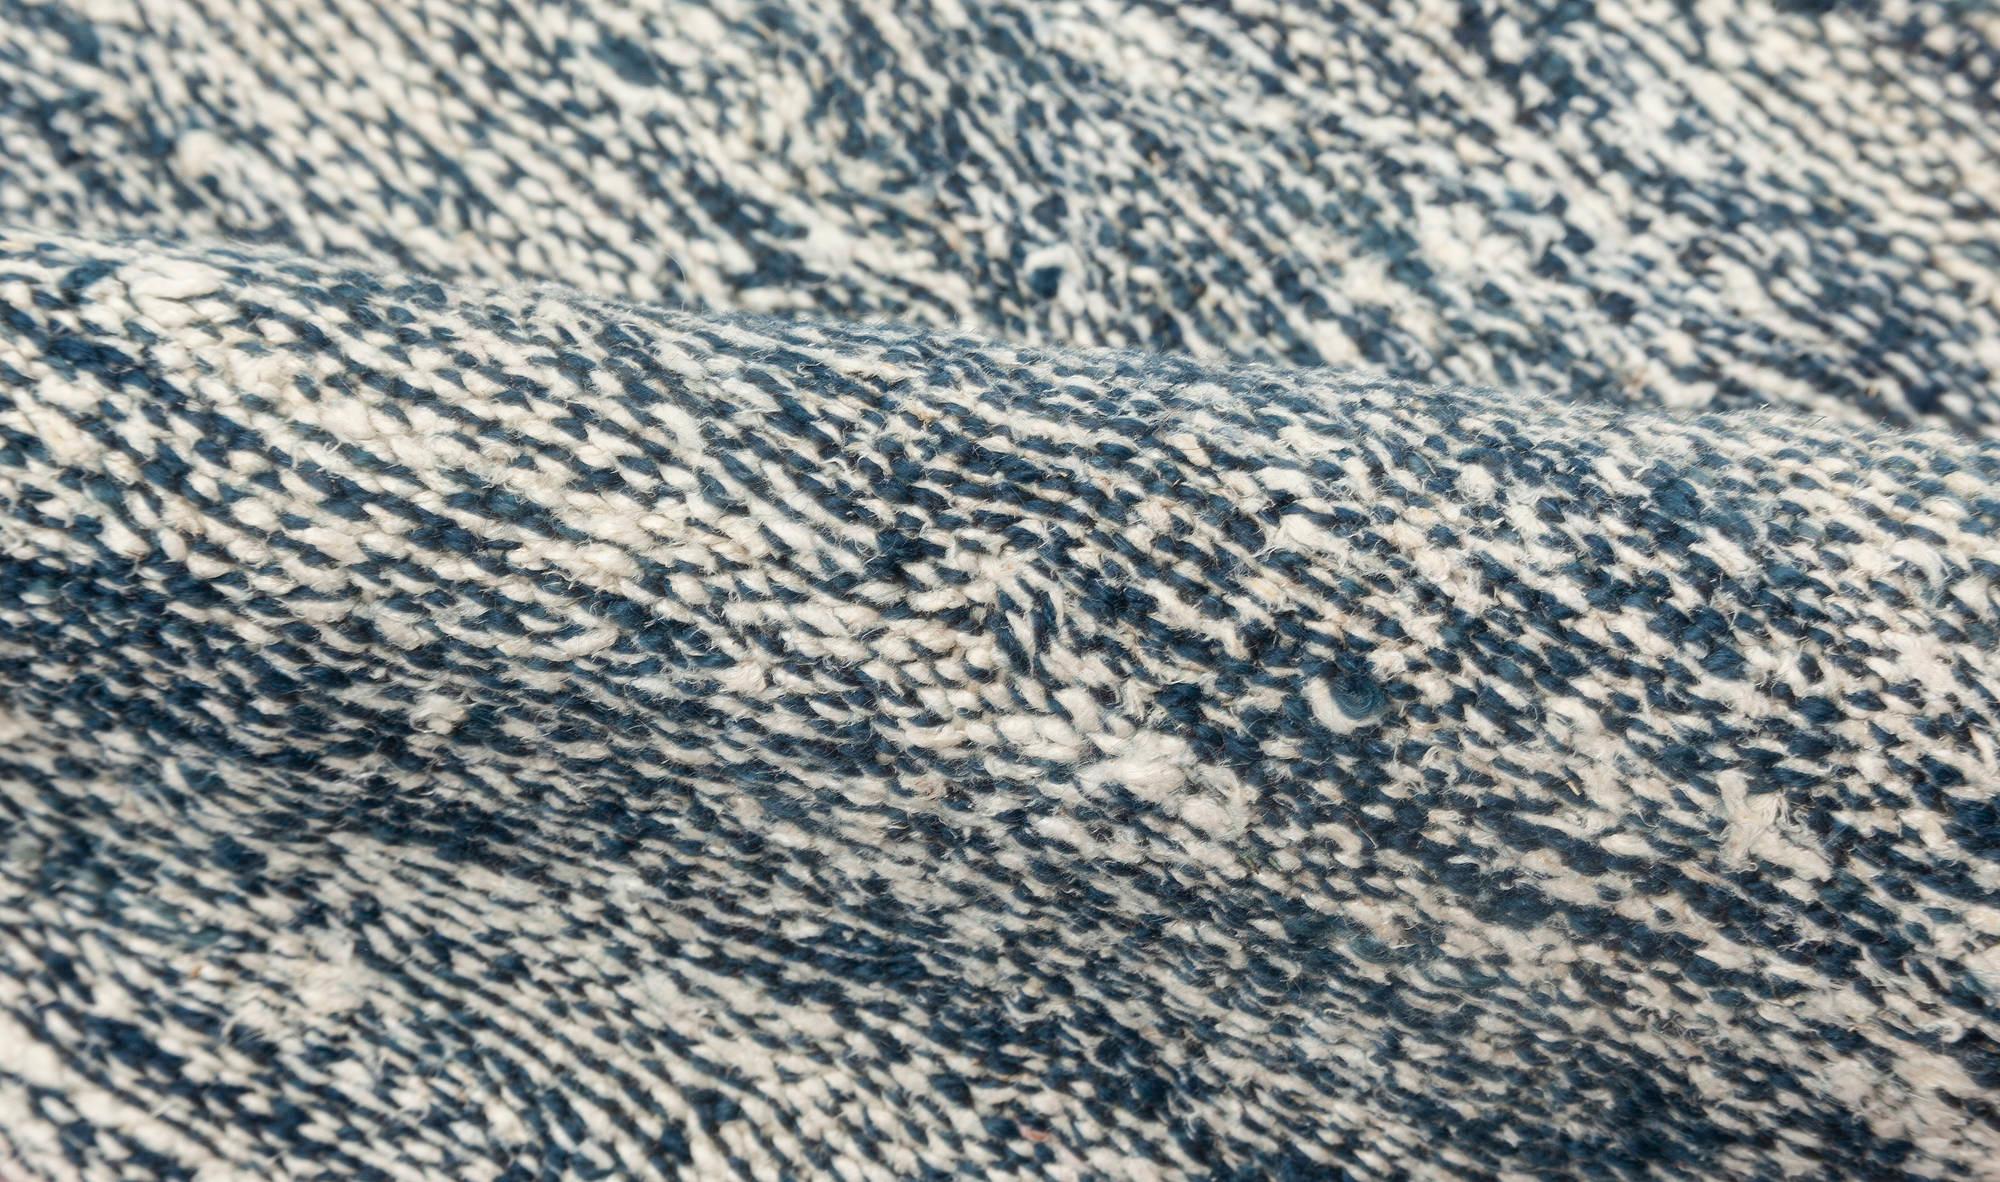 Tapis contemporain en laine tissée à plat, bleu et blanc, de Doris Leslie Blau.
Dimensions : 12'10